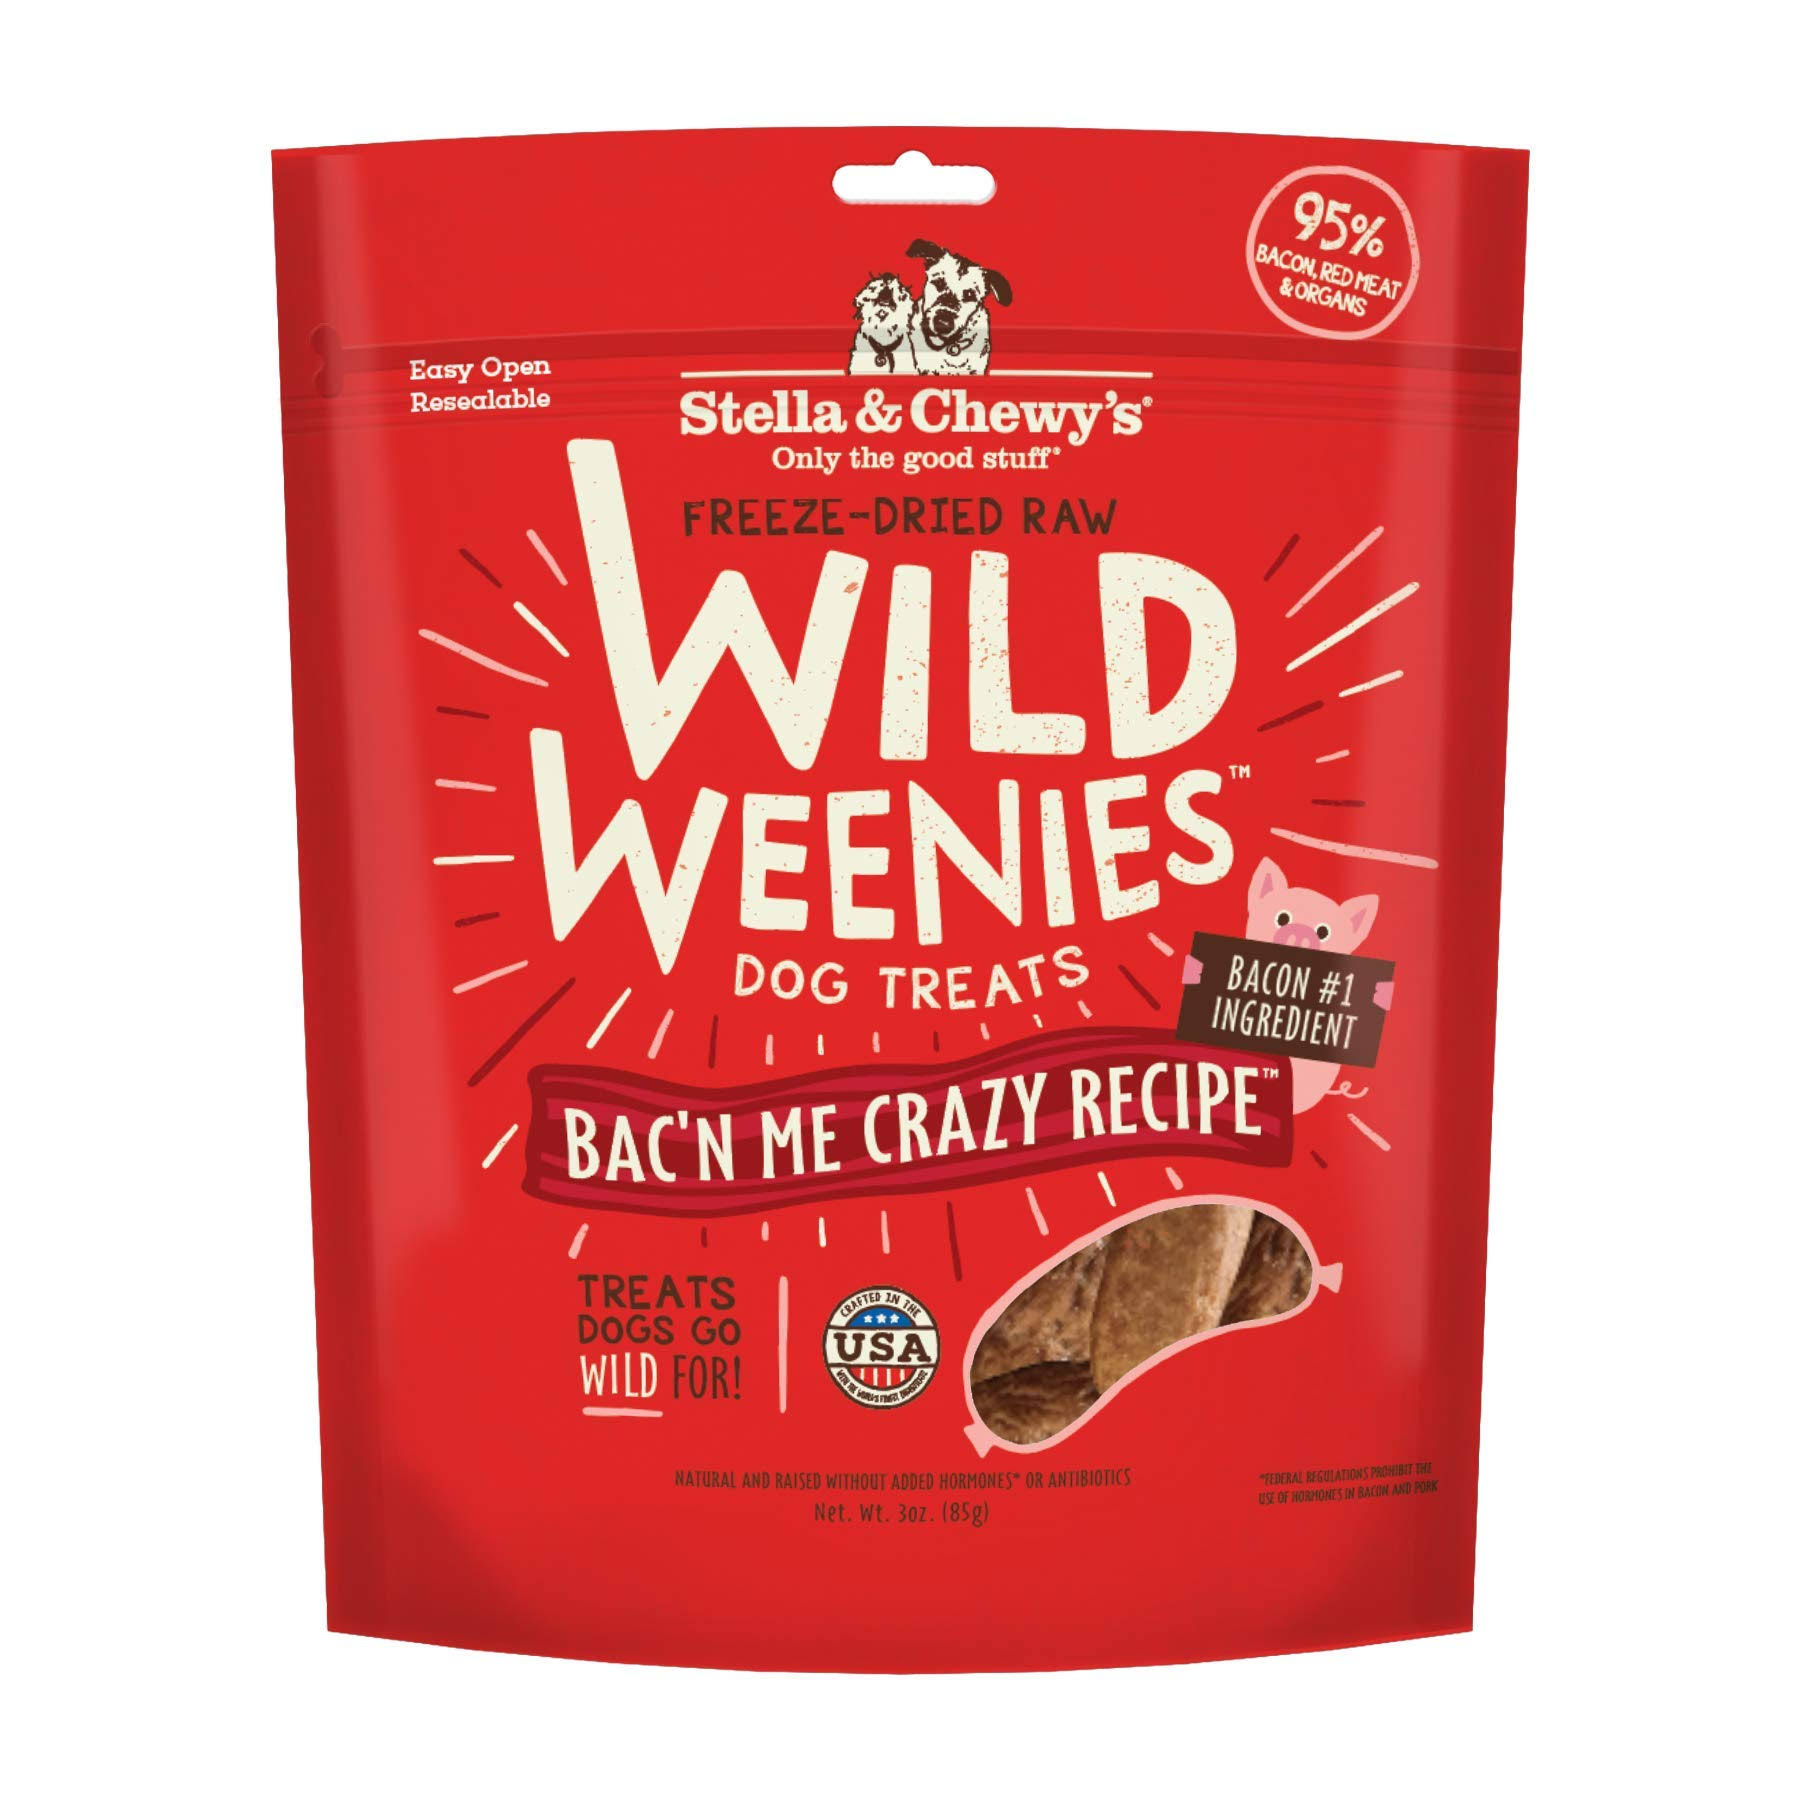 Stella & Chewy's - Bac'n Me Crazy Wild Weenies Freeze-Dried Raw (Dog Treats) 3oz